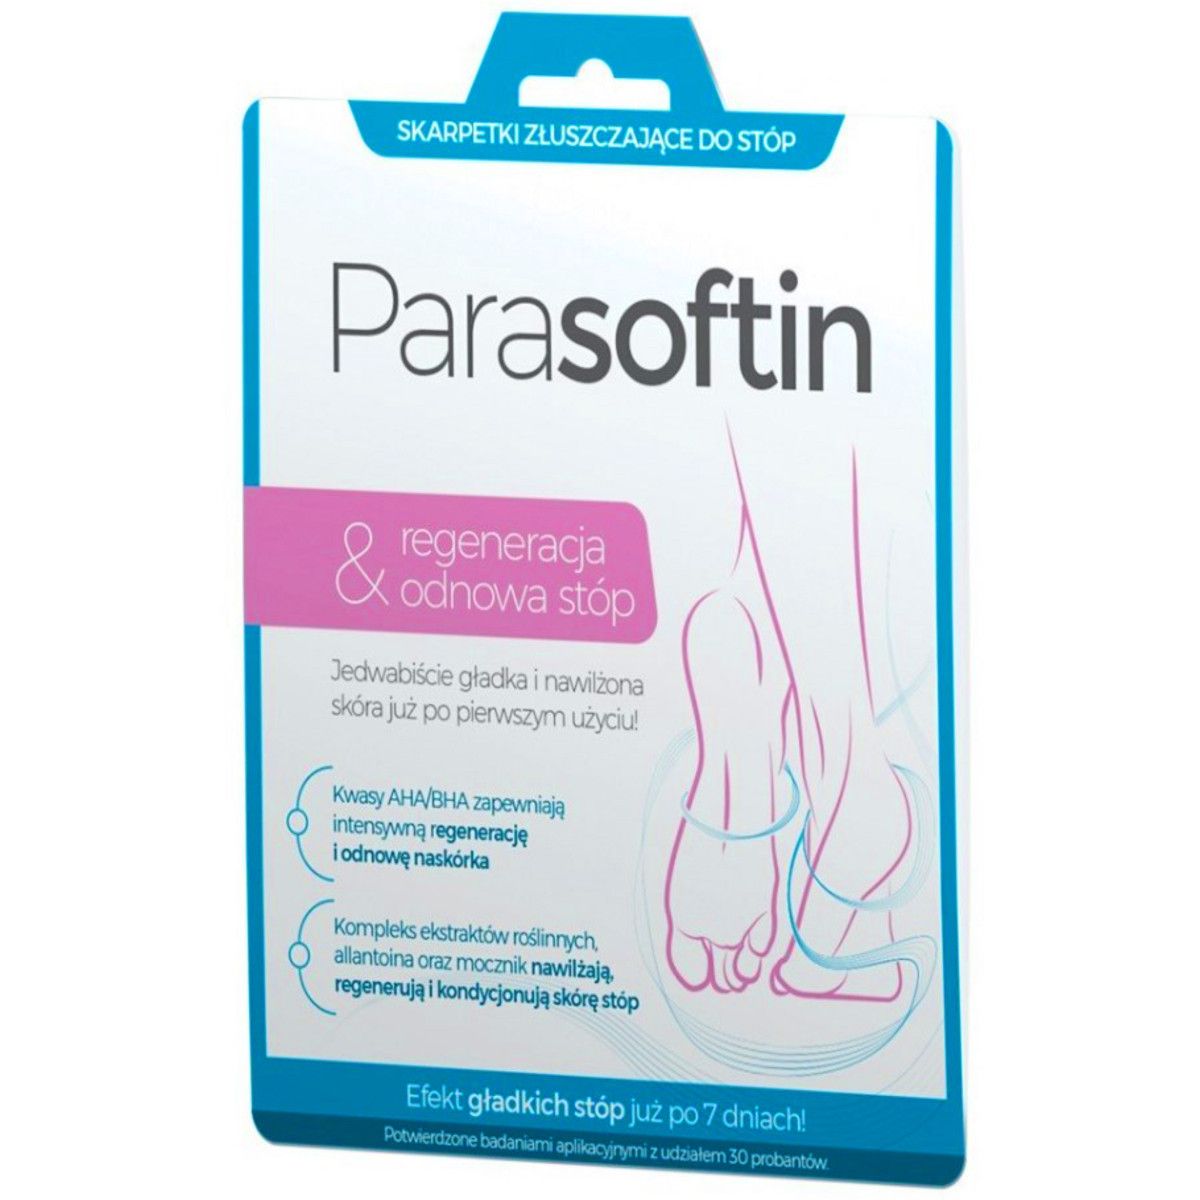 Parasoftin - pielęgnujące skarpetki złuszczające do stóp, 1 para